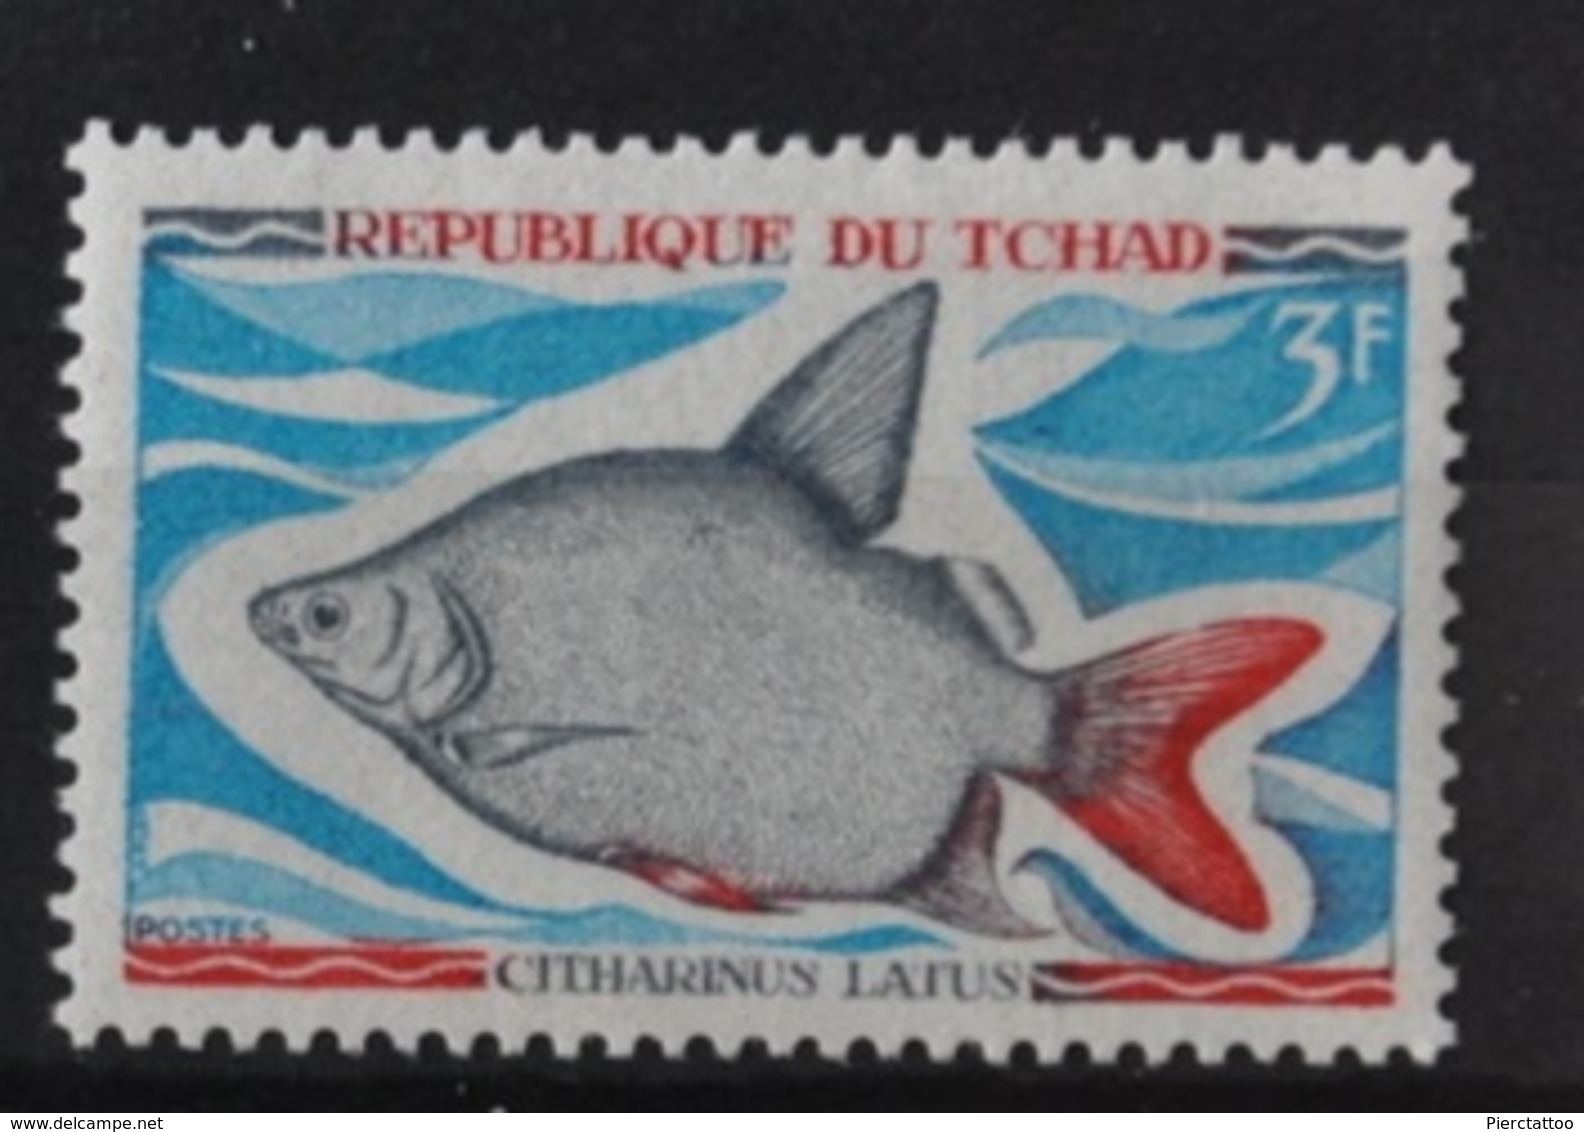 Citharinus Latus (Poisson/Animaux) - Tchad - 1969 - YT 217 - Neuf - Chad (1960-...)